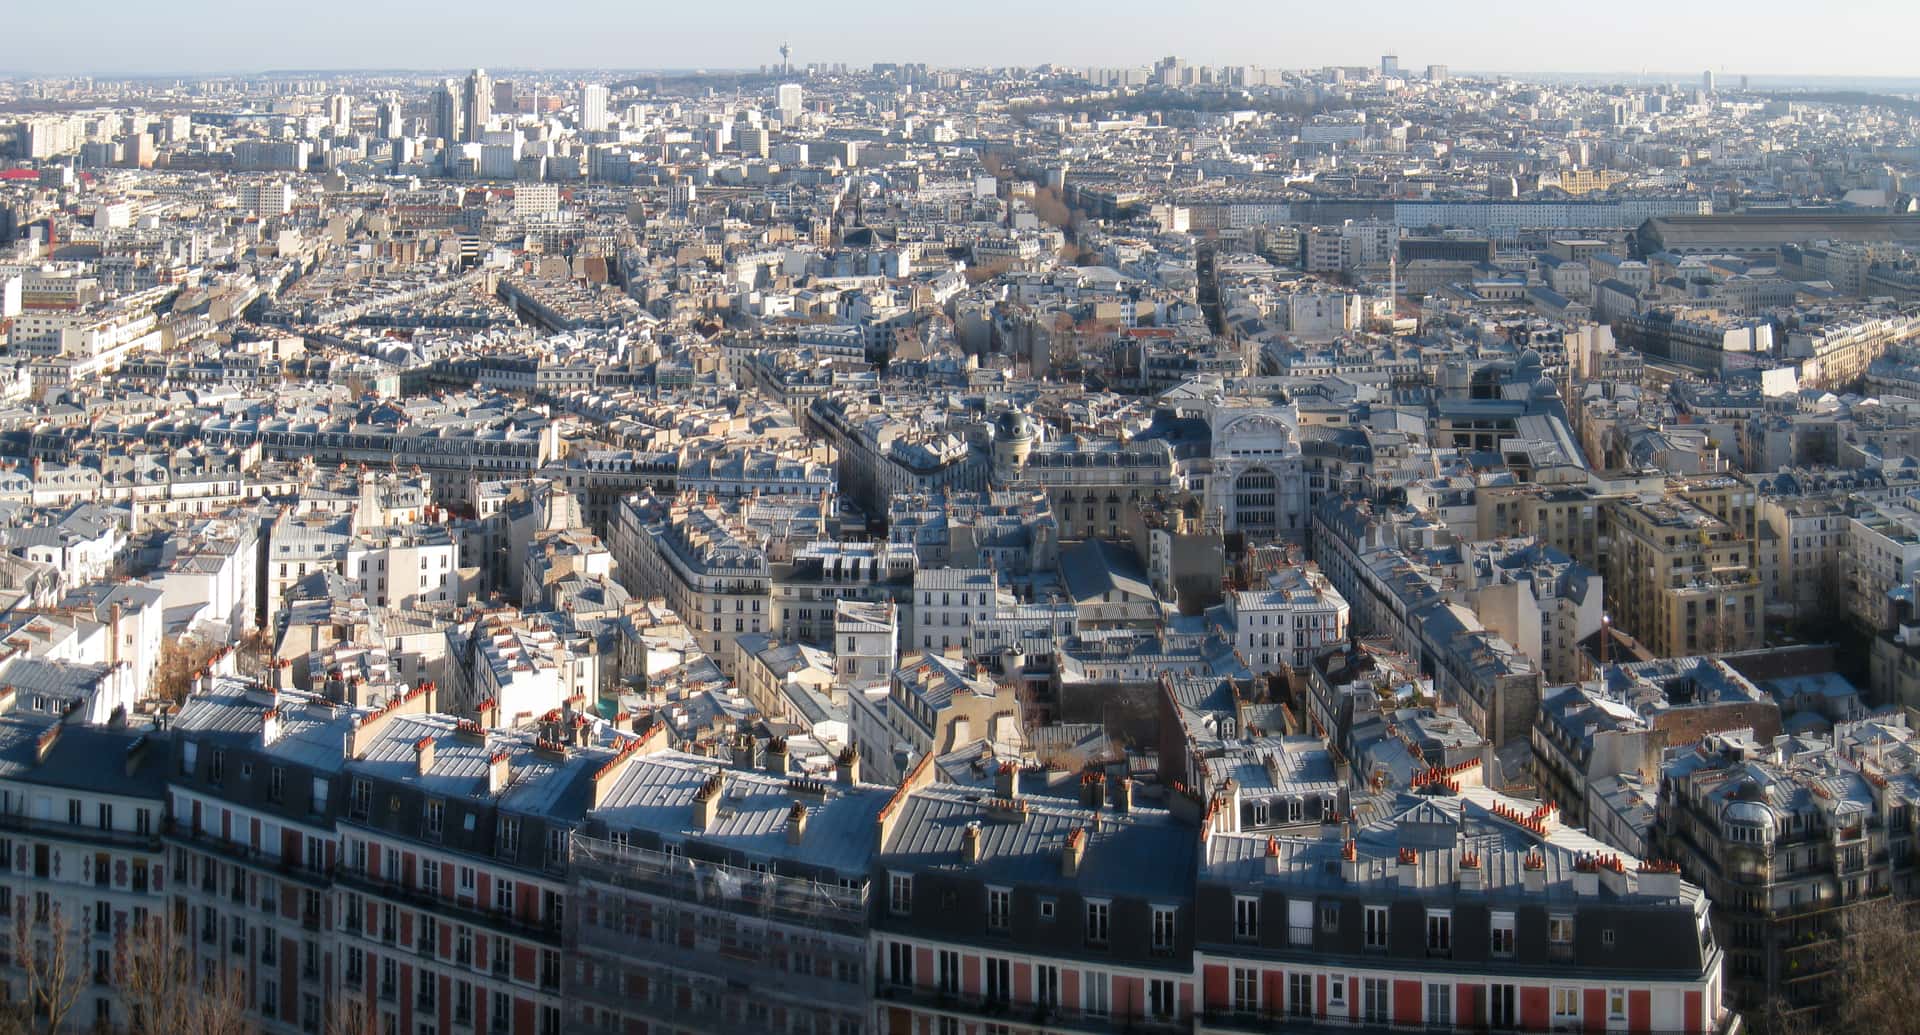 eastward view of Paris from Sacré-Cœur